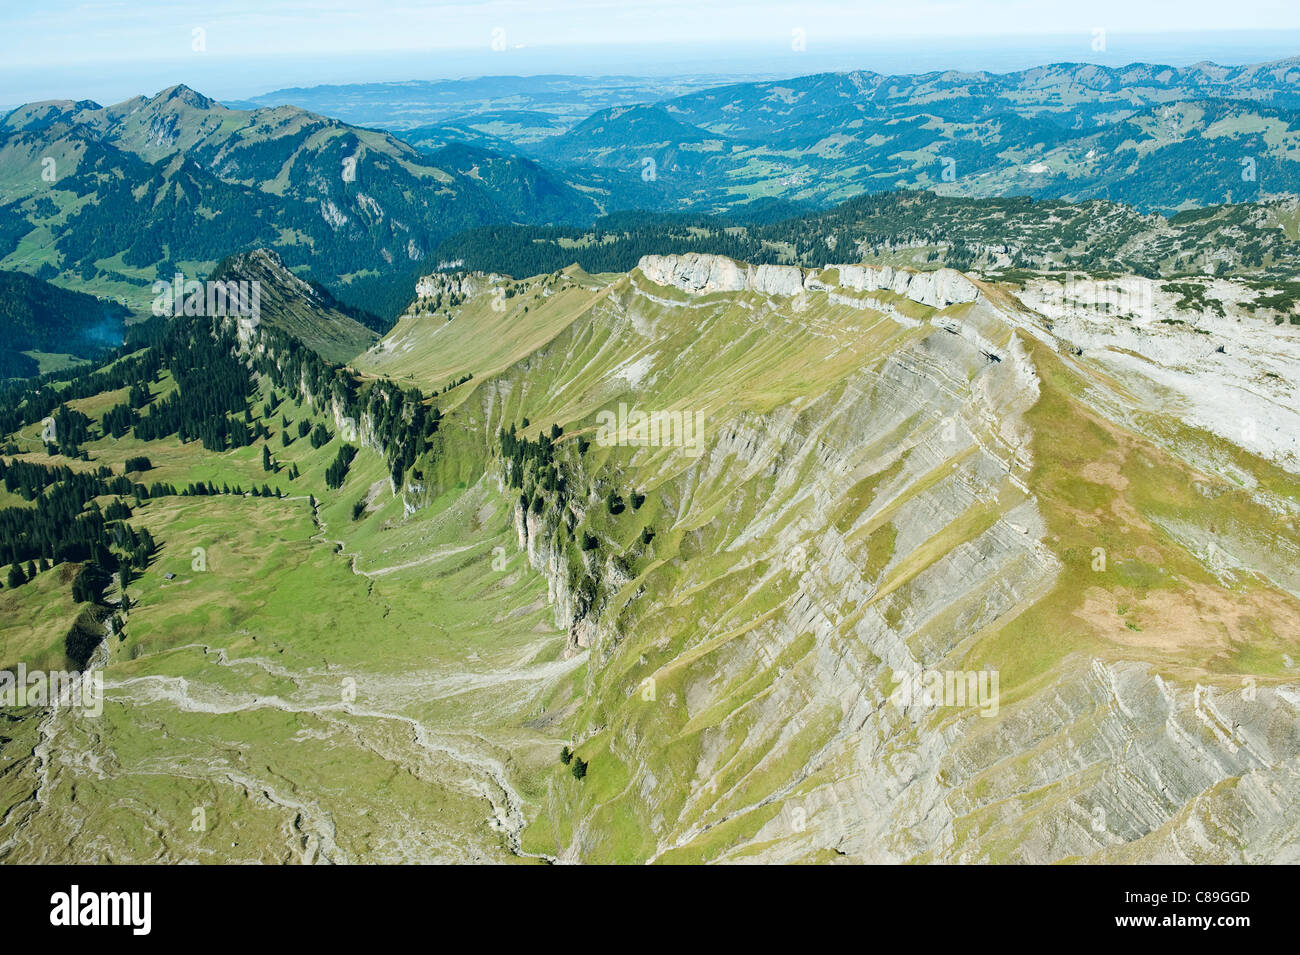 Austria, Kleinwalsertal, View of landscape with mountain ranges Stock Photo